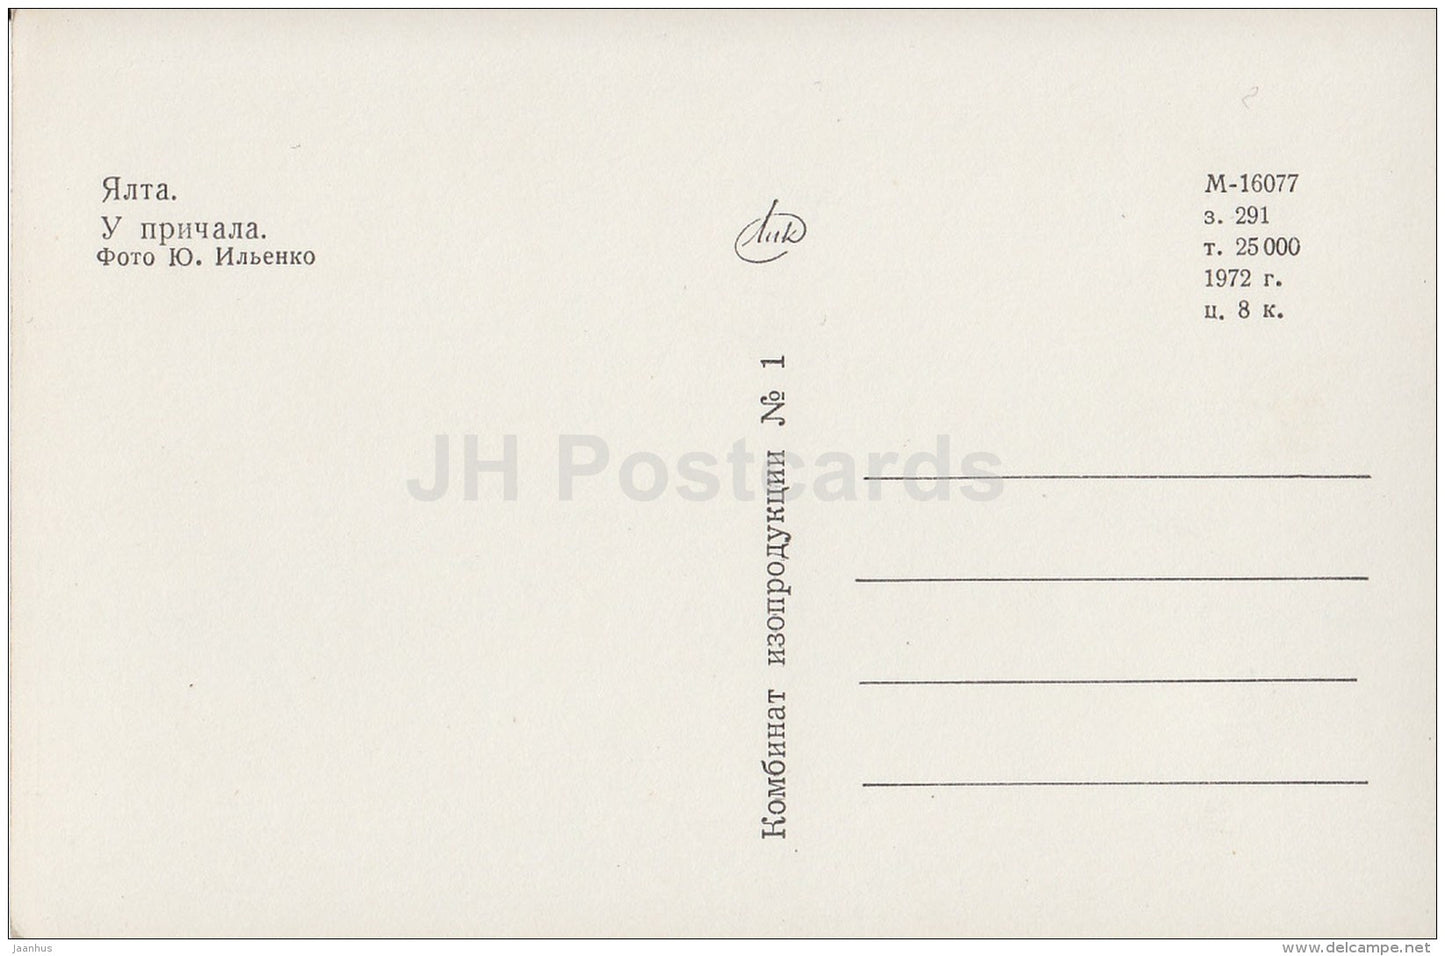 Berth - ship - Black sea - Yalta - 1972 - Ukraine USSR - unused - JH Postcards